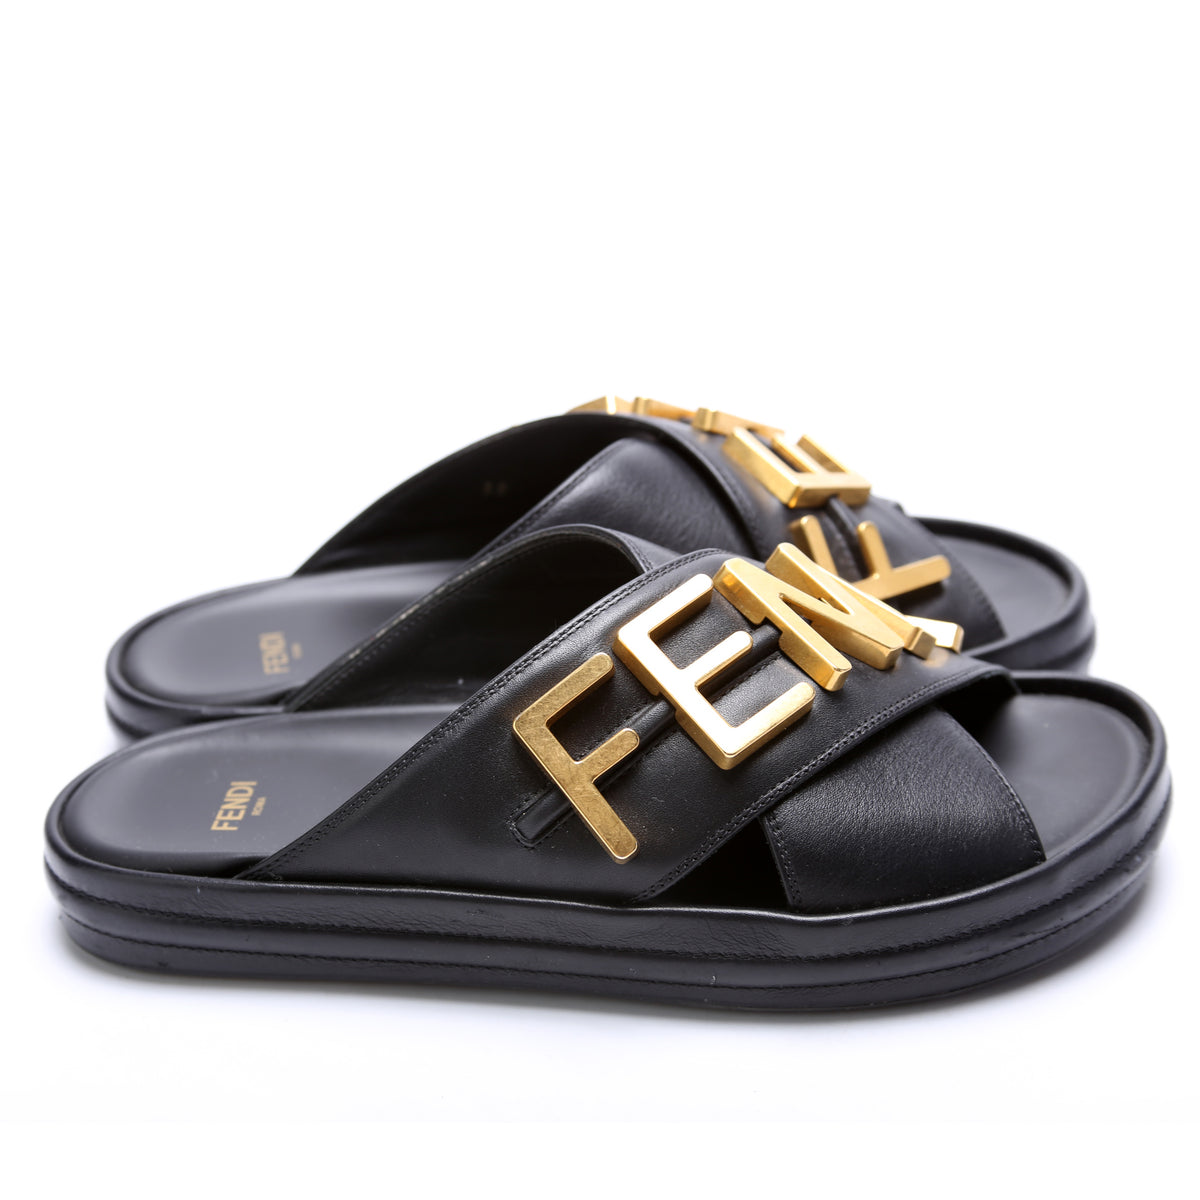 Fendigraphy Leather Sandals Size 38 – Keeks Designer Handbags